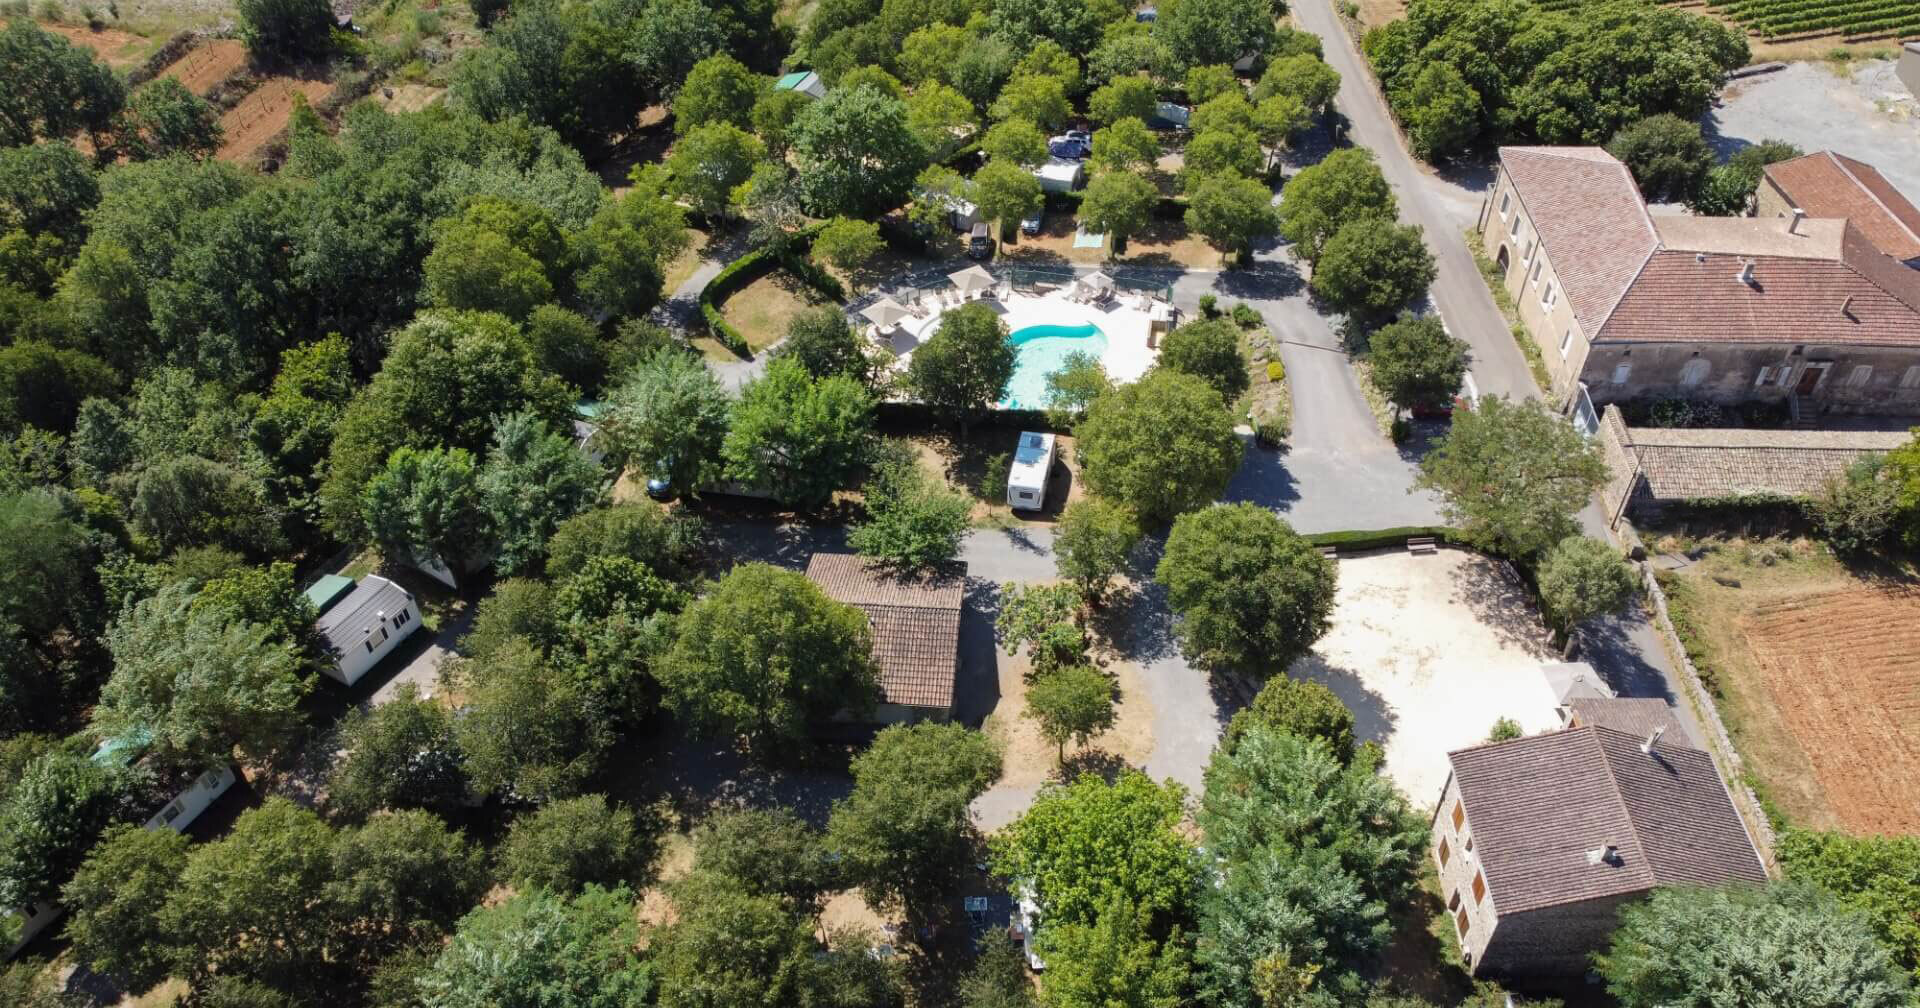 Vue aérienne du camping 3 étoiles en Ardèche Les Châtaigniers avec piscine